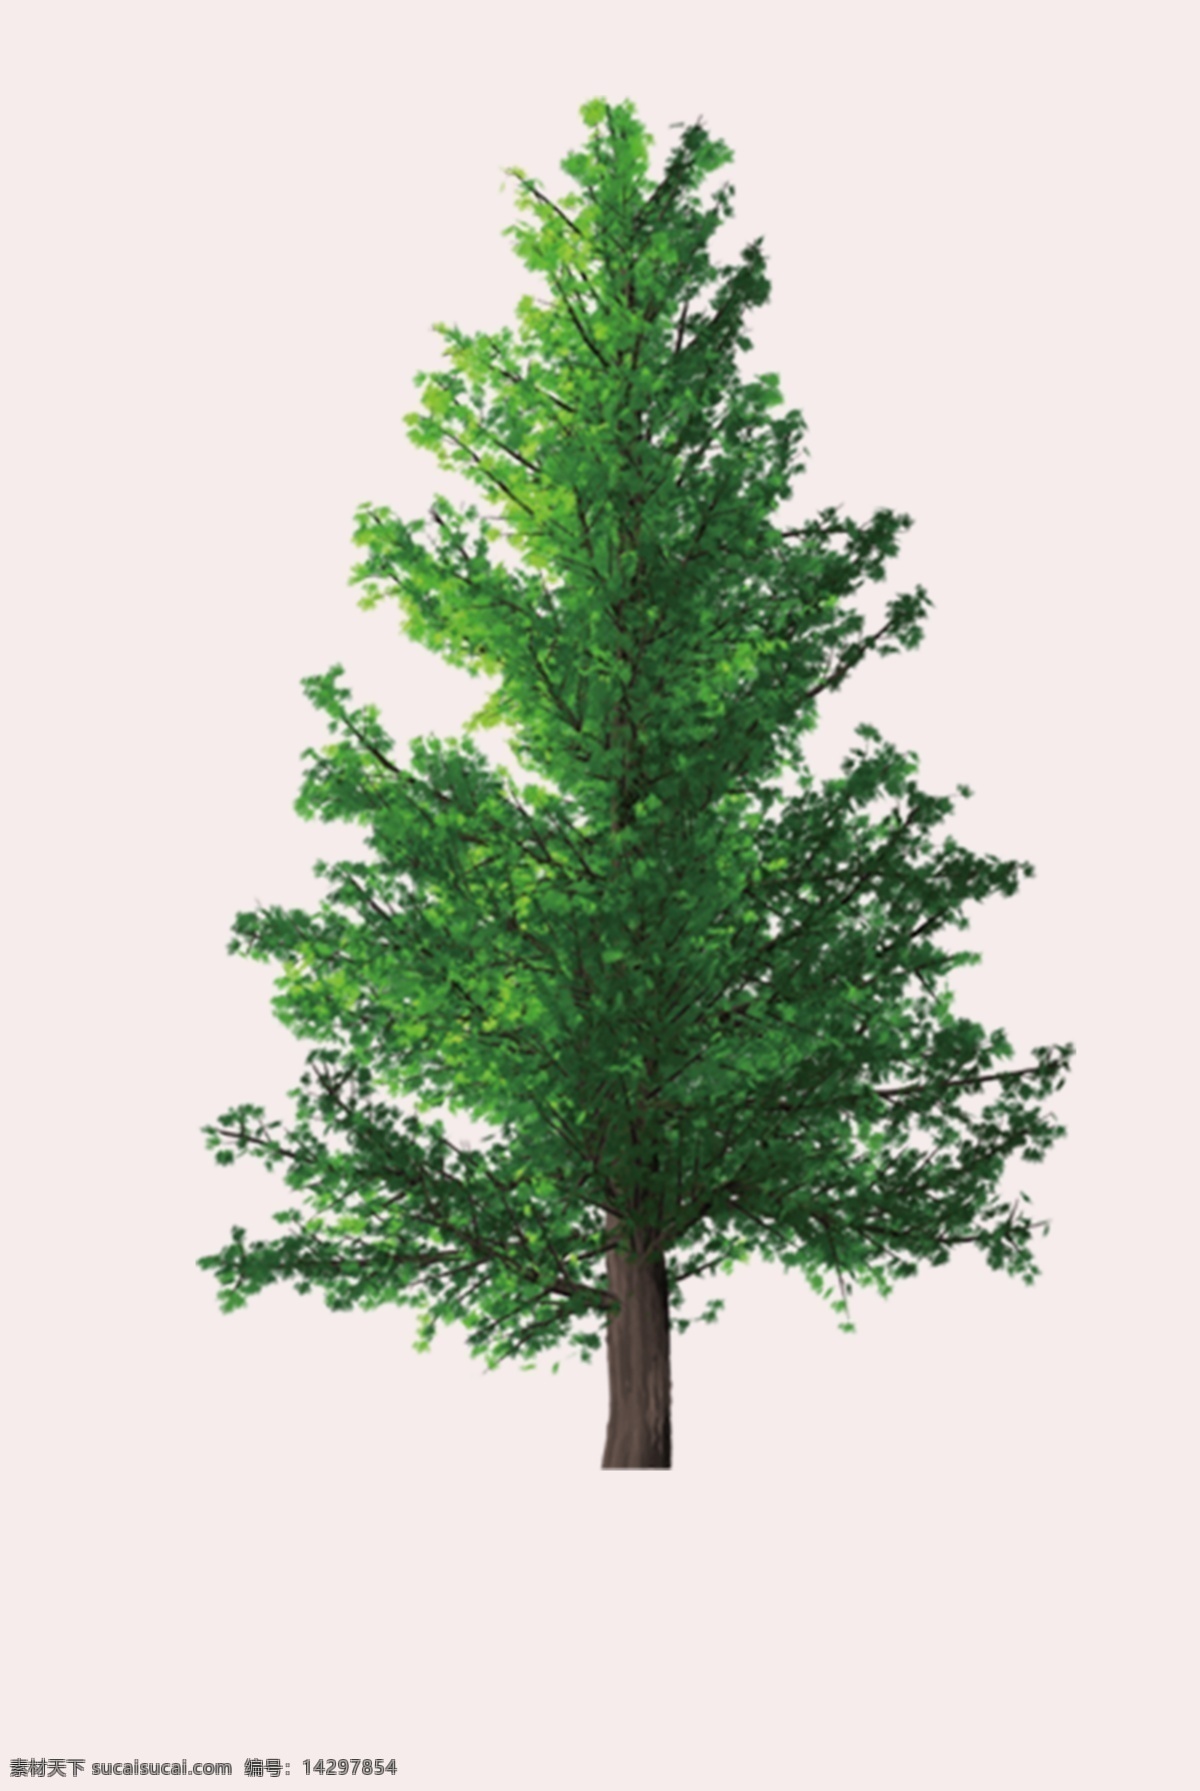 绿树 大树 树叶 树枝 树干 植物 绿色 标识 生物世界 树木树叶